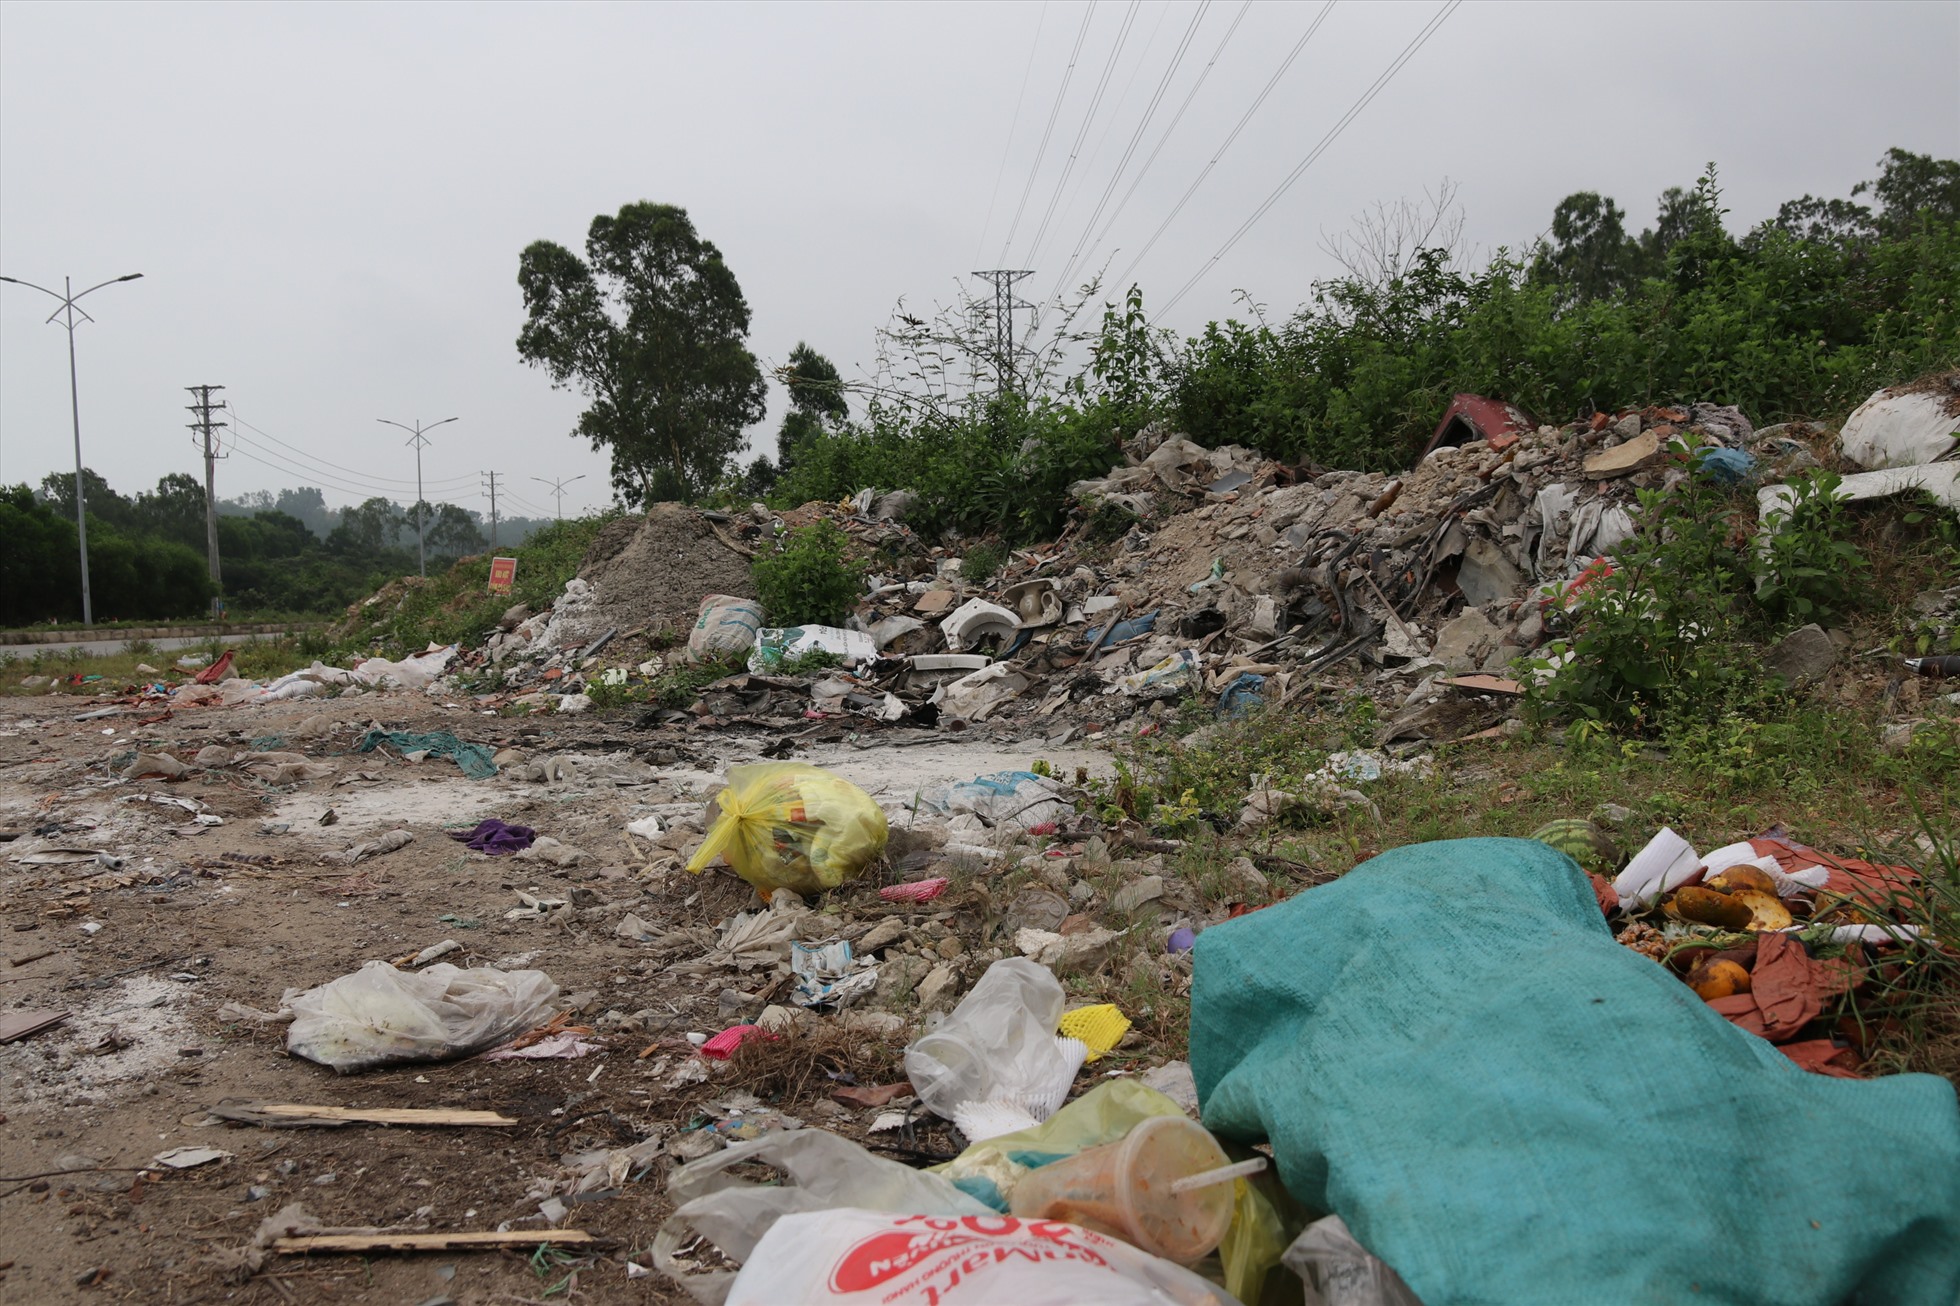 Đứng cách bãi rác khoảng chừng 10m PV đã cảm nhận được mùi hôi thối nồng nặc từ những túi rác đầy côn trùng, nghi là xác chết động vật.